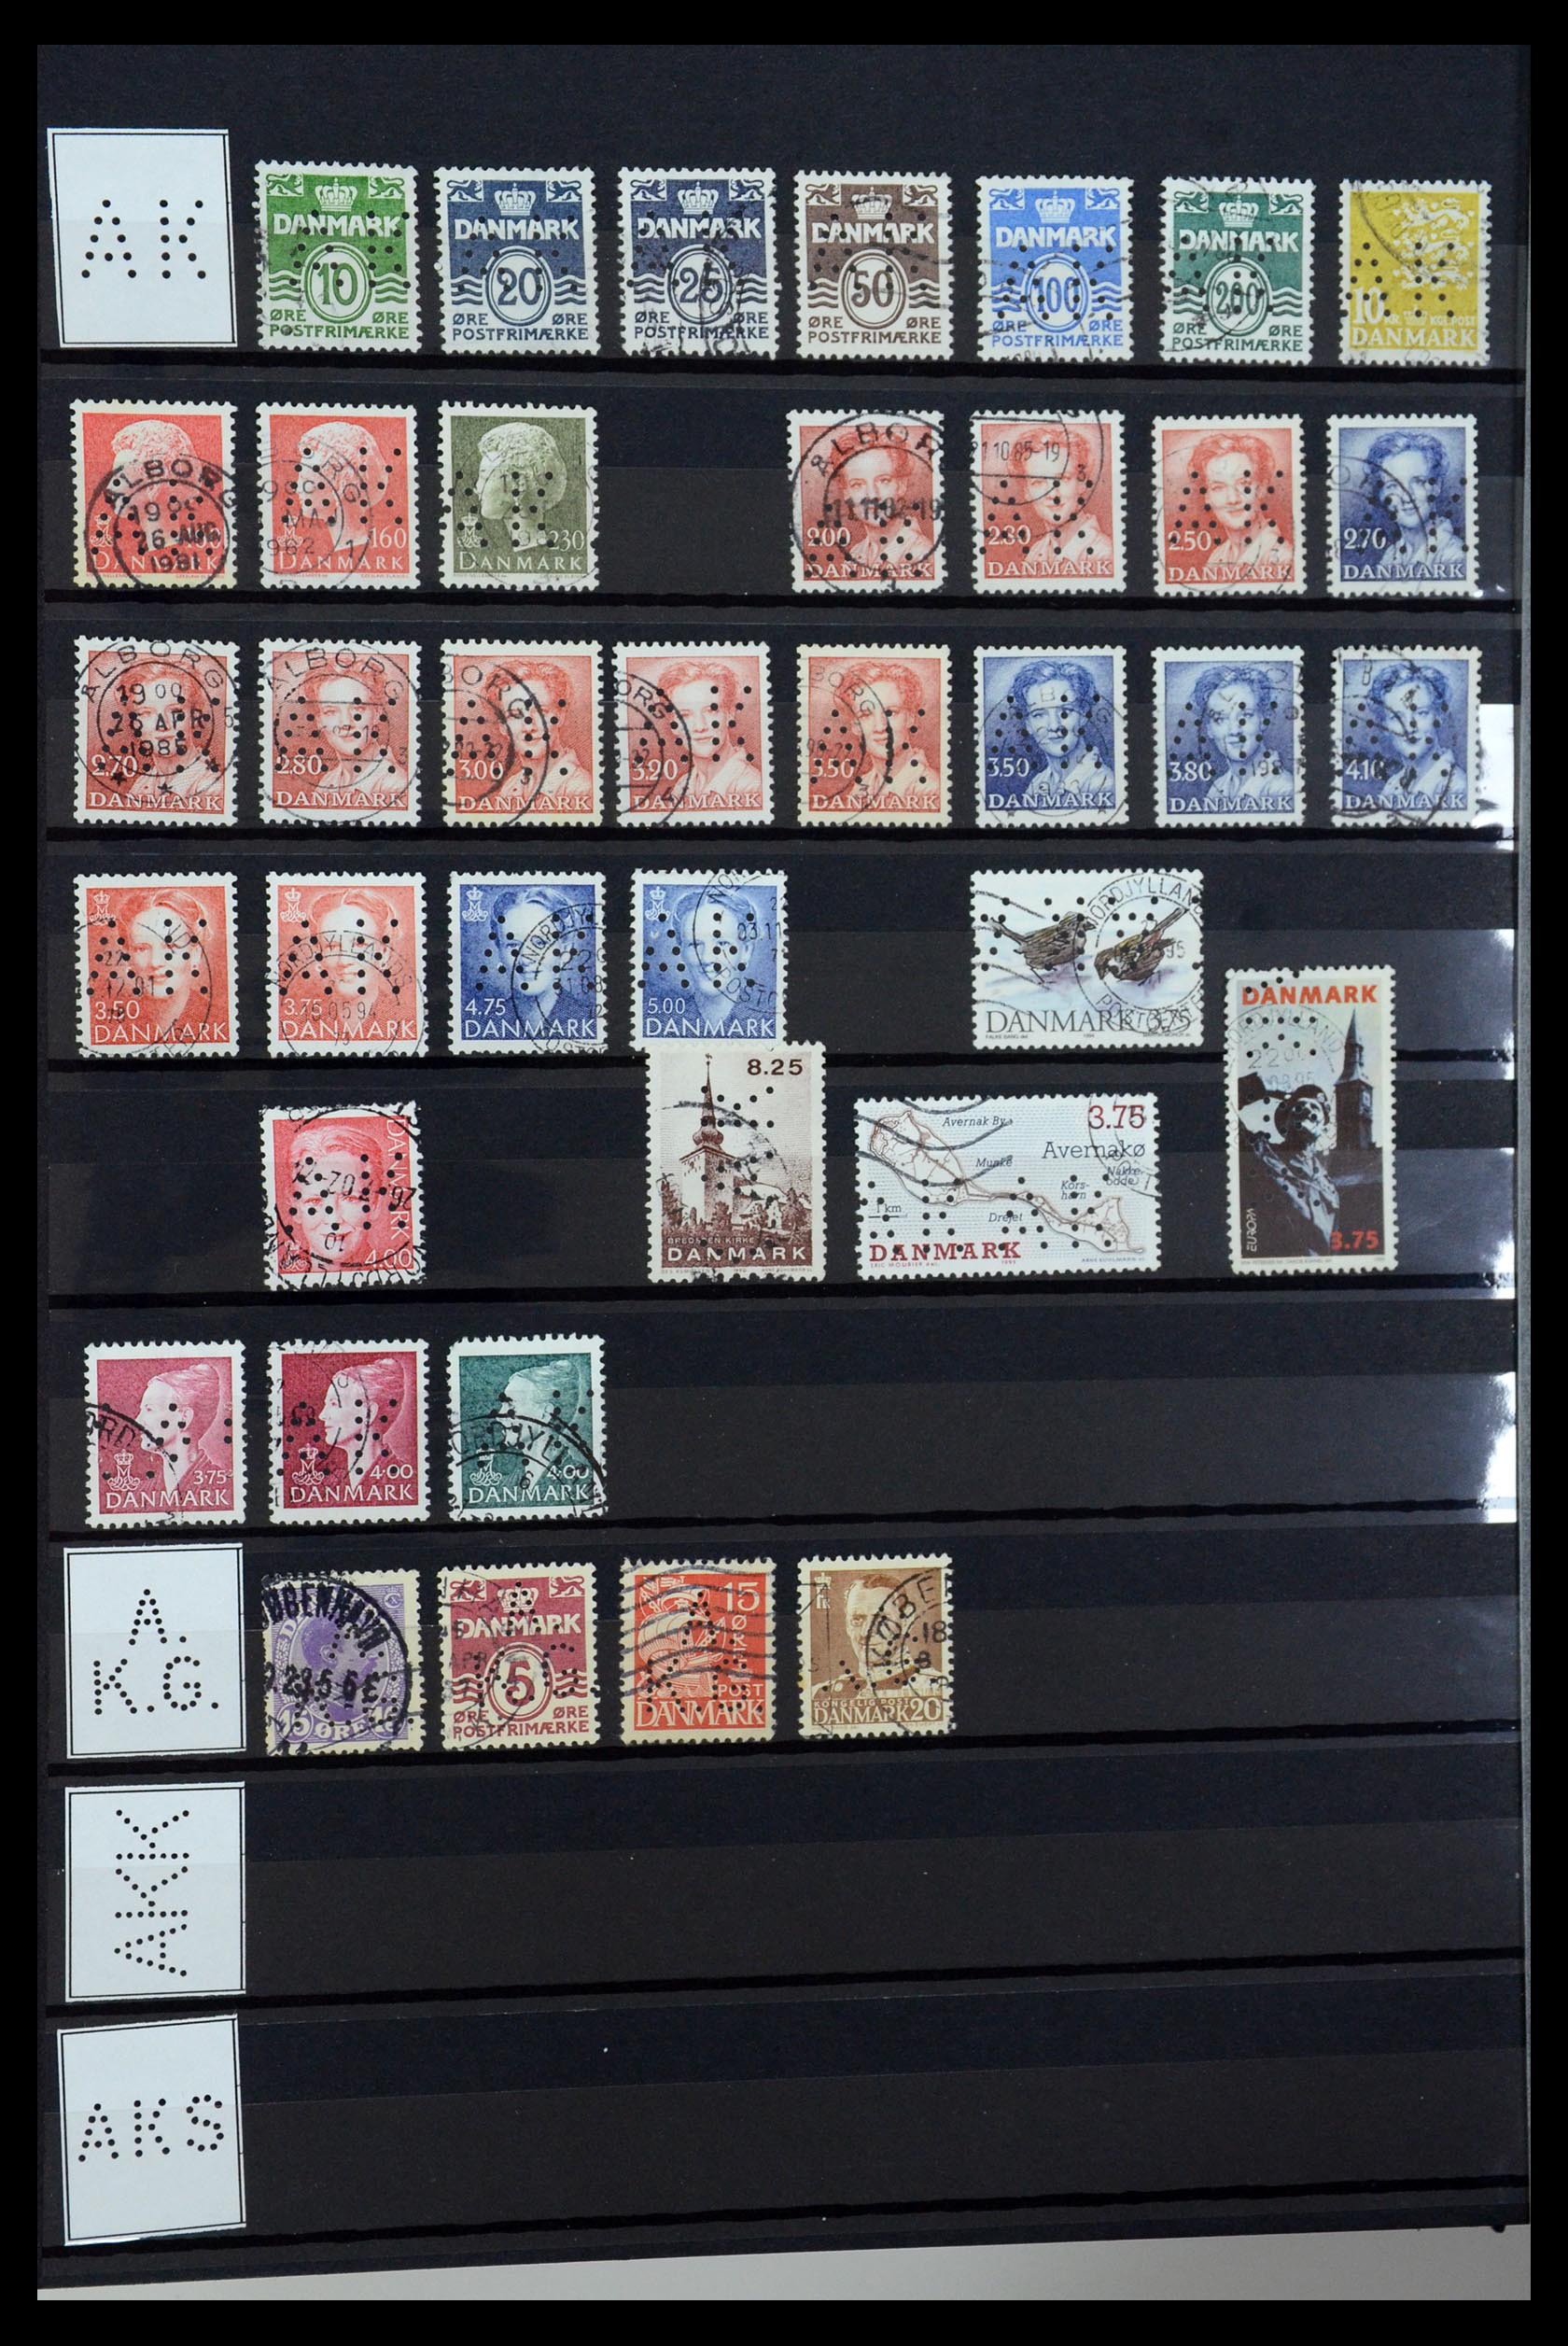 36396 006 - Postzegelverzameling 36396 Denemarken perfins.